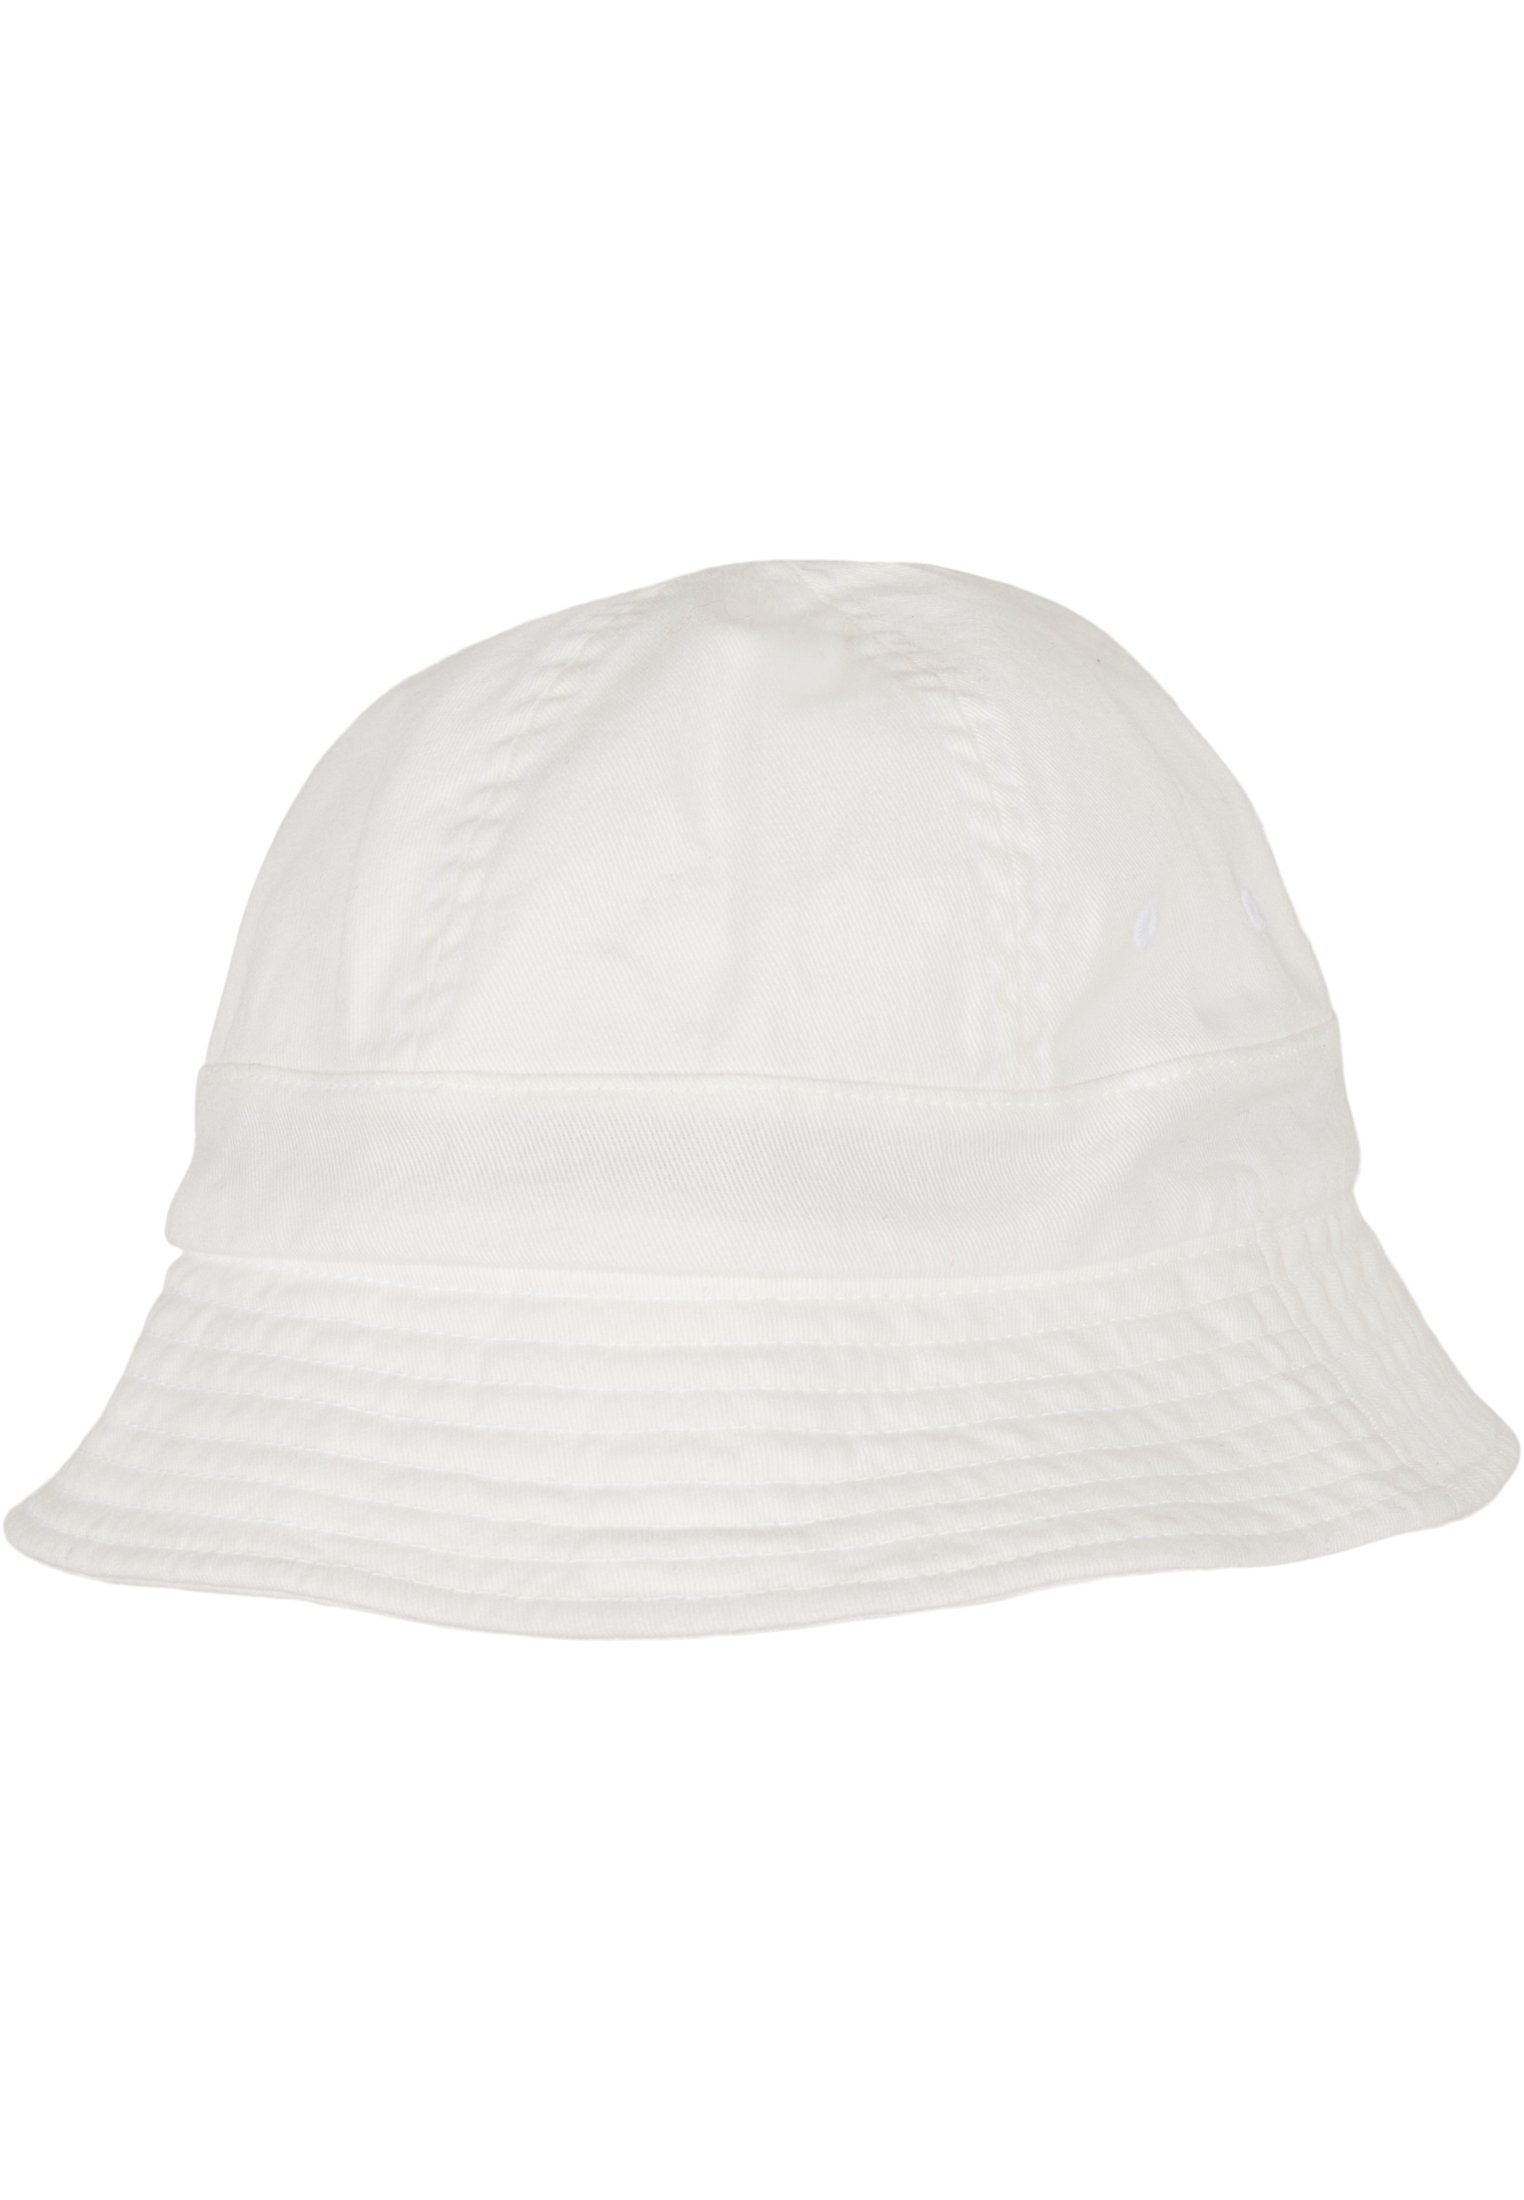 Tennis Hat white Notop Flexfit Cap Flex Eco Accessoires Washing Flexfit